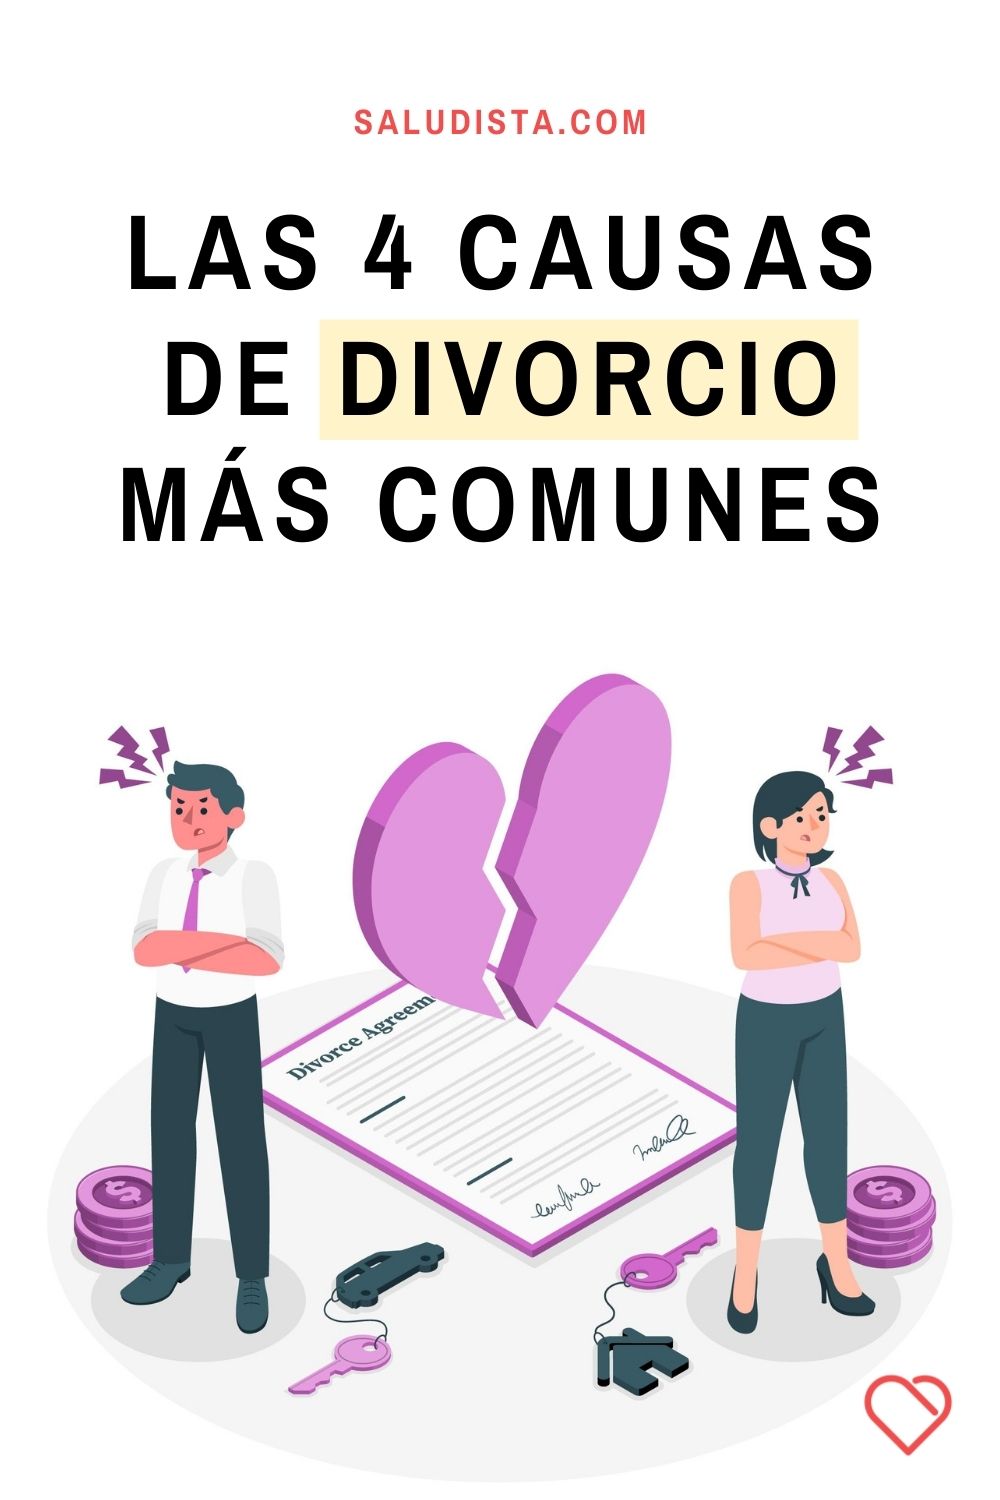 Las 4 causas de divorcio más comunes